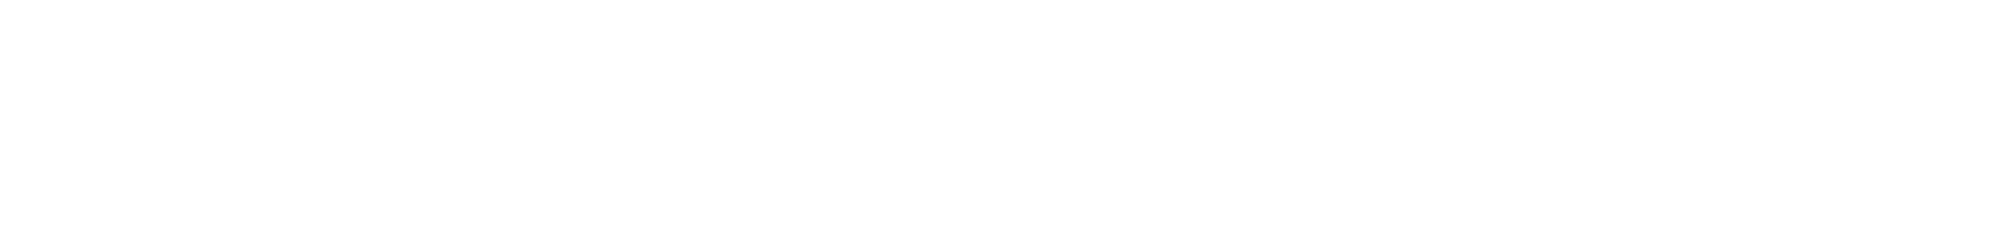 2000px-Süddeutsche_Zeitung_Logo.png